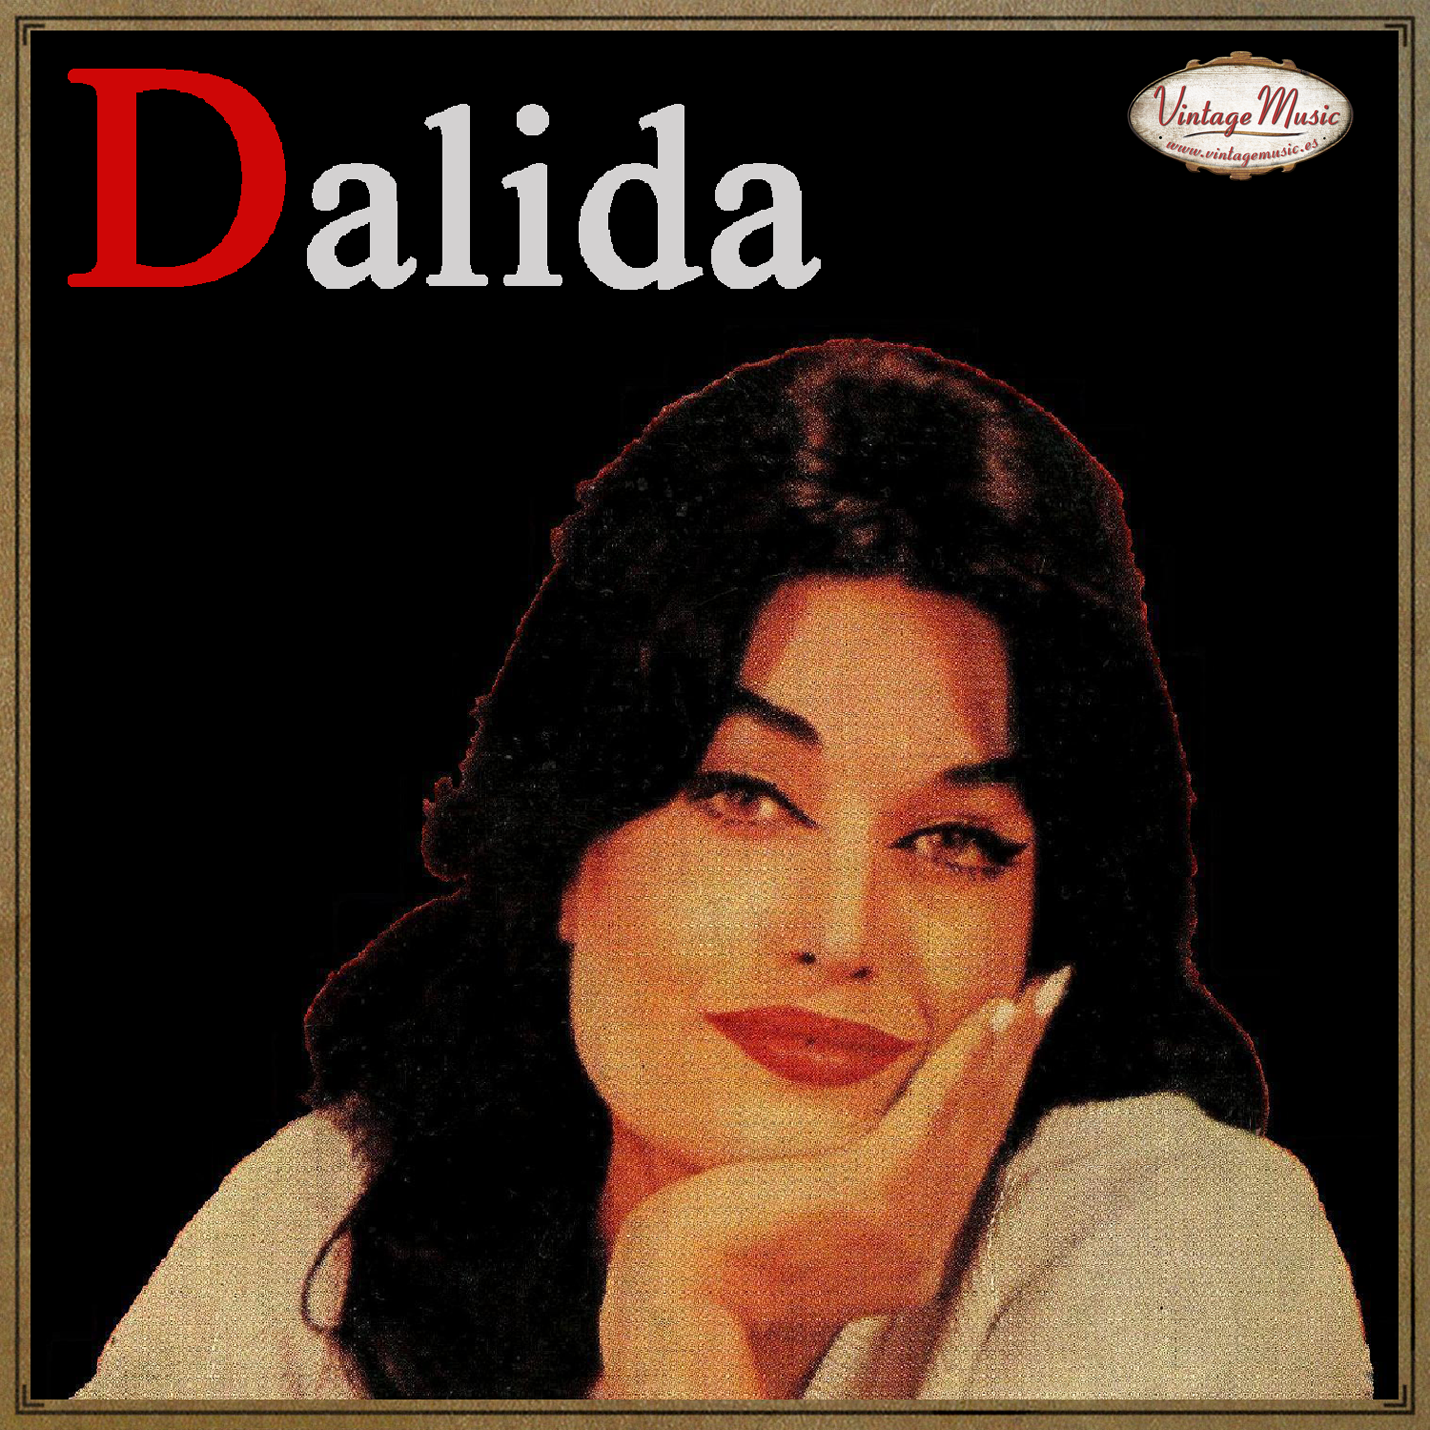 Dalida (Colección Vintage Music)